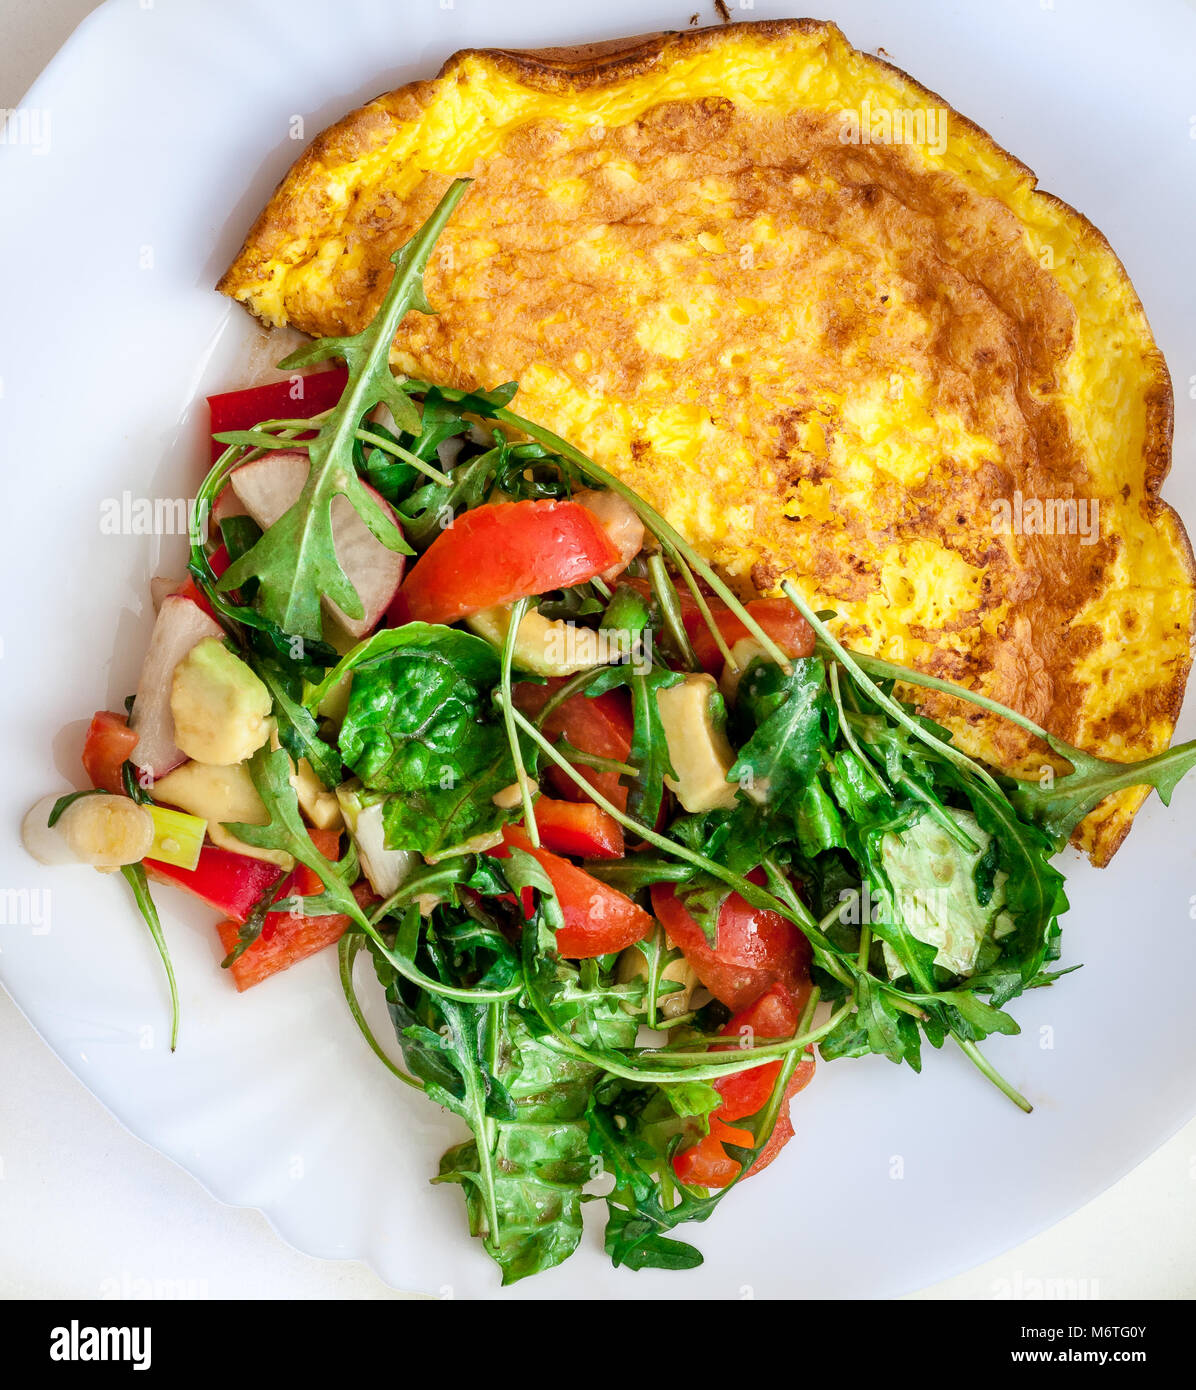 Hausgemachte Omelett mit Käse, Tomaten und Rucola Salat. Frühstück, morgen. Stockfoto